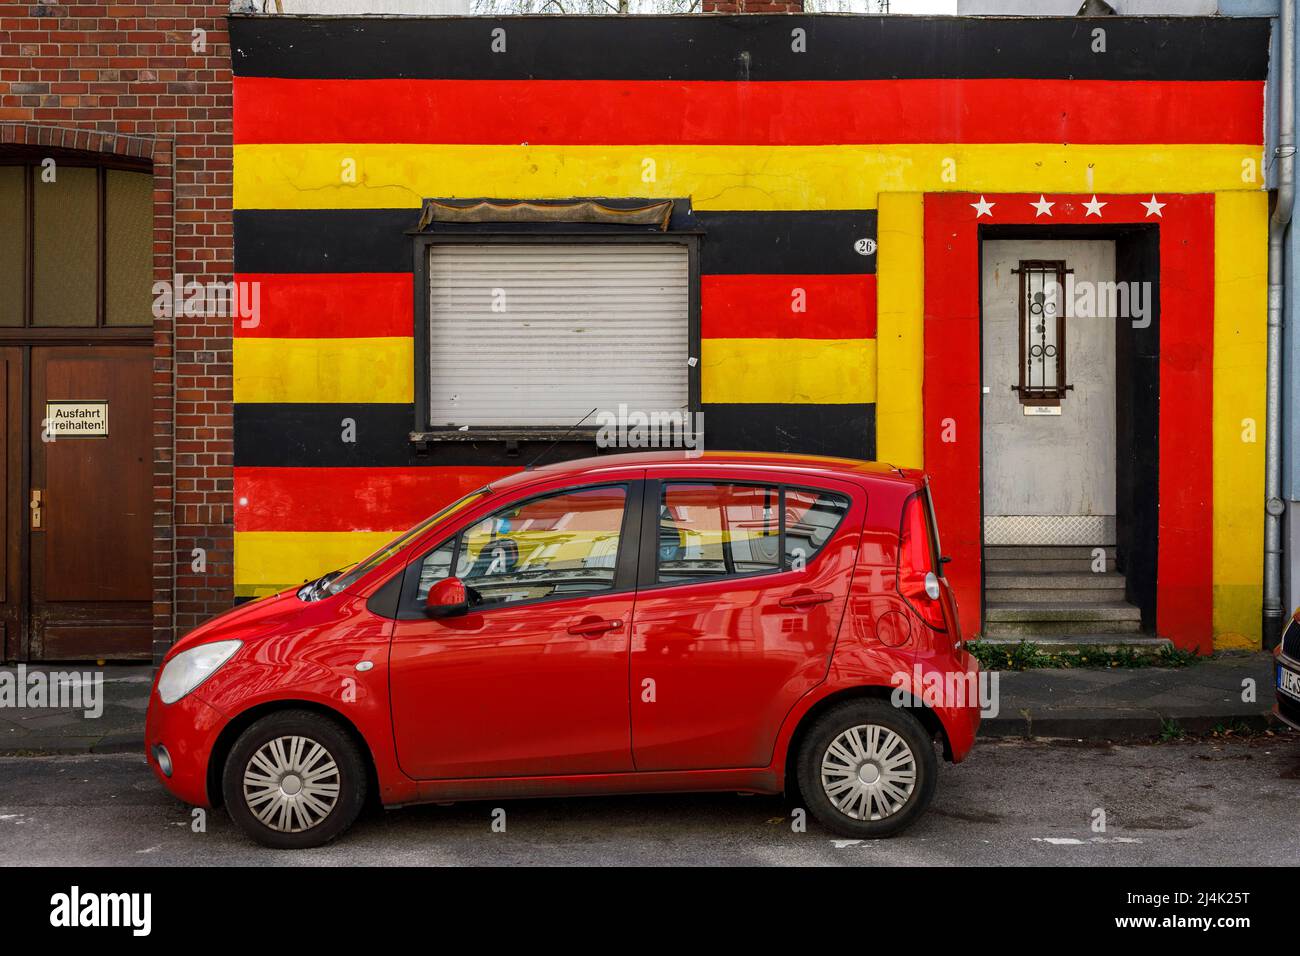 Vorderseite eines Wohnhauses in den deutschen Nationalfarben und 4 Sterne über der Eingangstür. Hommage an die Fußballweltmeisterin. Stockfoto